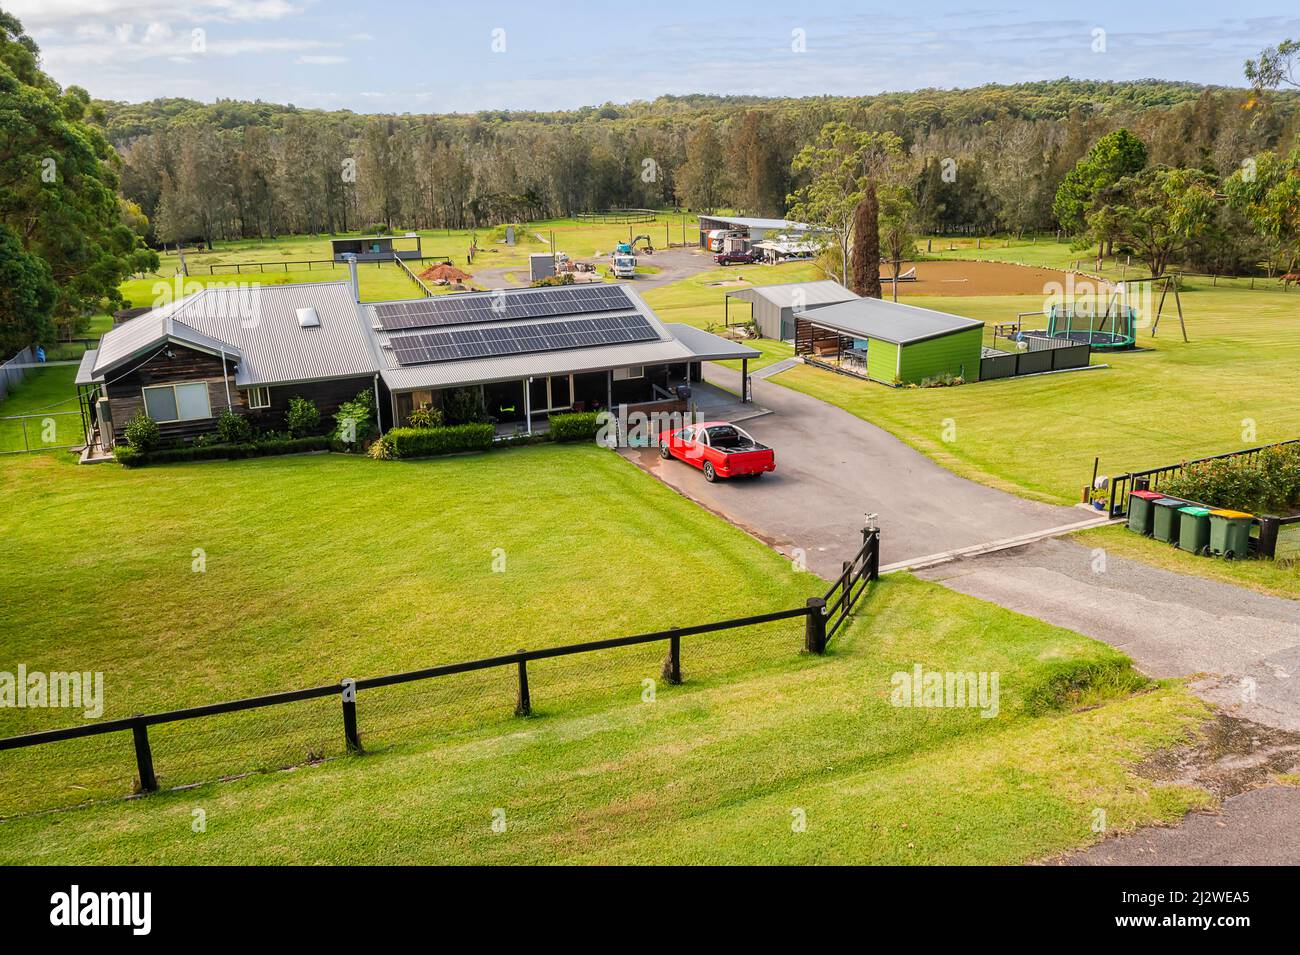 Abgelegene landwirtschaftliche Farm mit Pferdestall auf grünen Rasenweiden - erhöhte Aussicht. Stockfoto